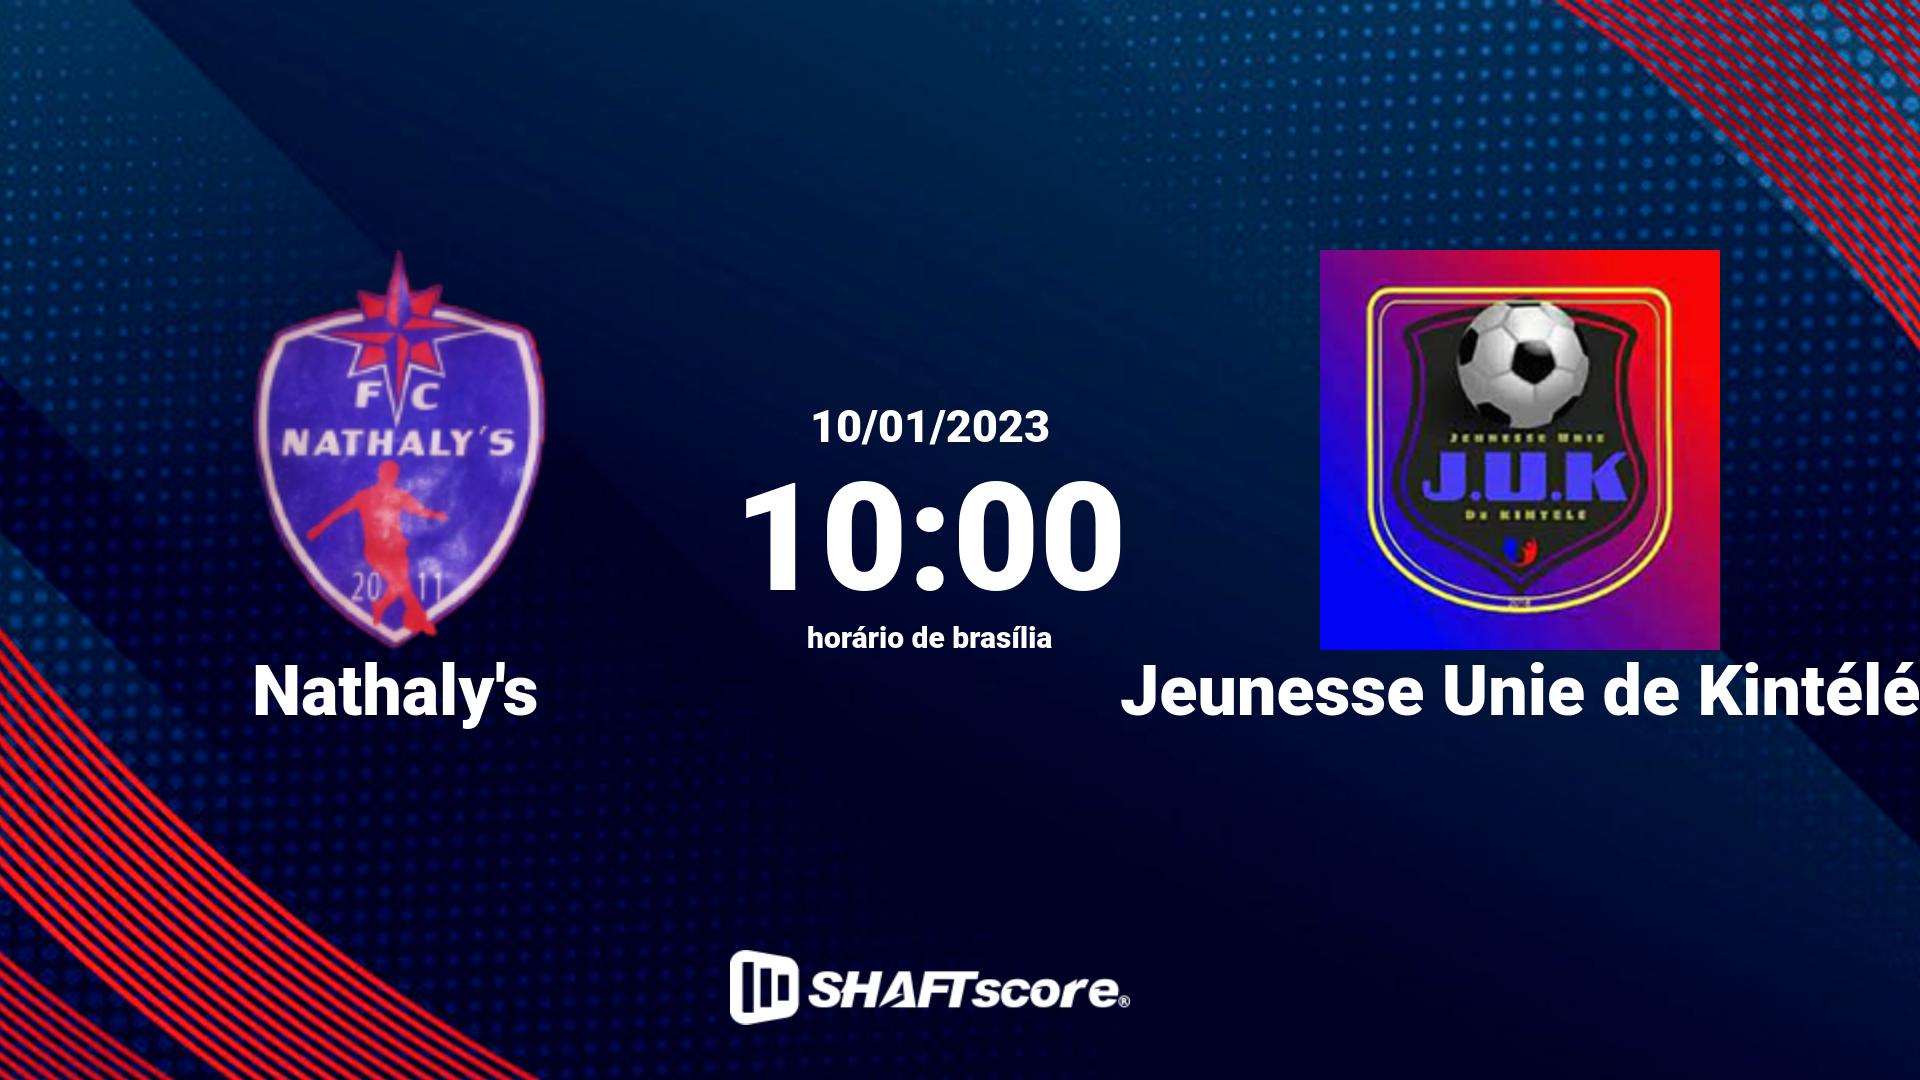 Estatísticas do jogo Nathaly's vs Jeunesse Unie de Kintélé 10.01 10:00